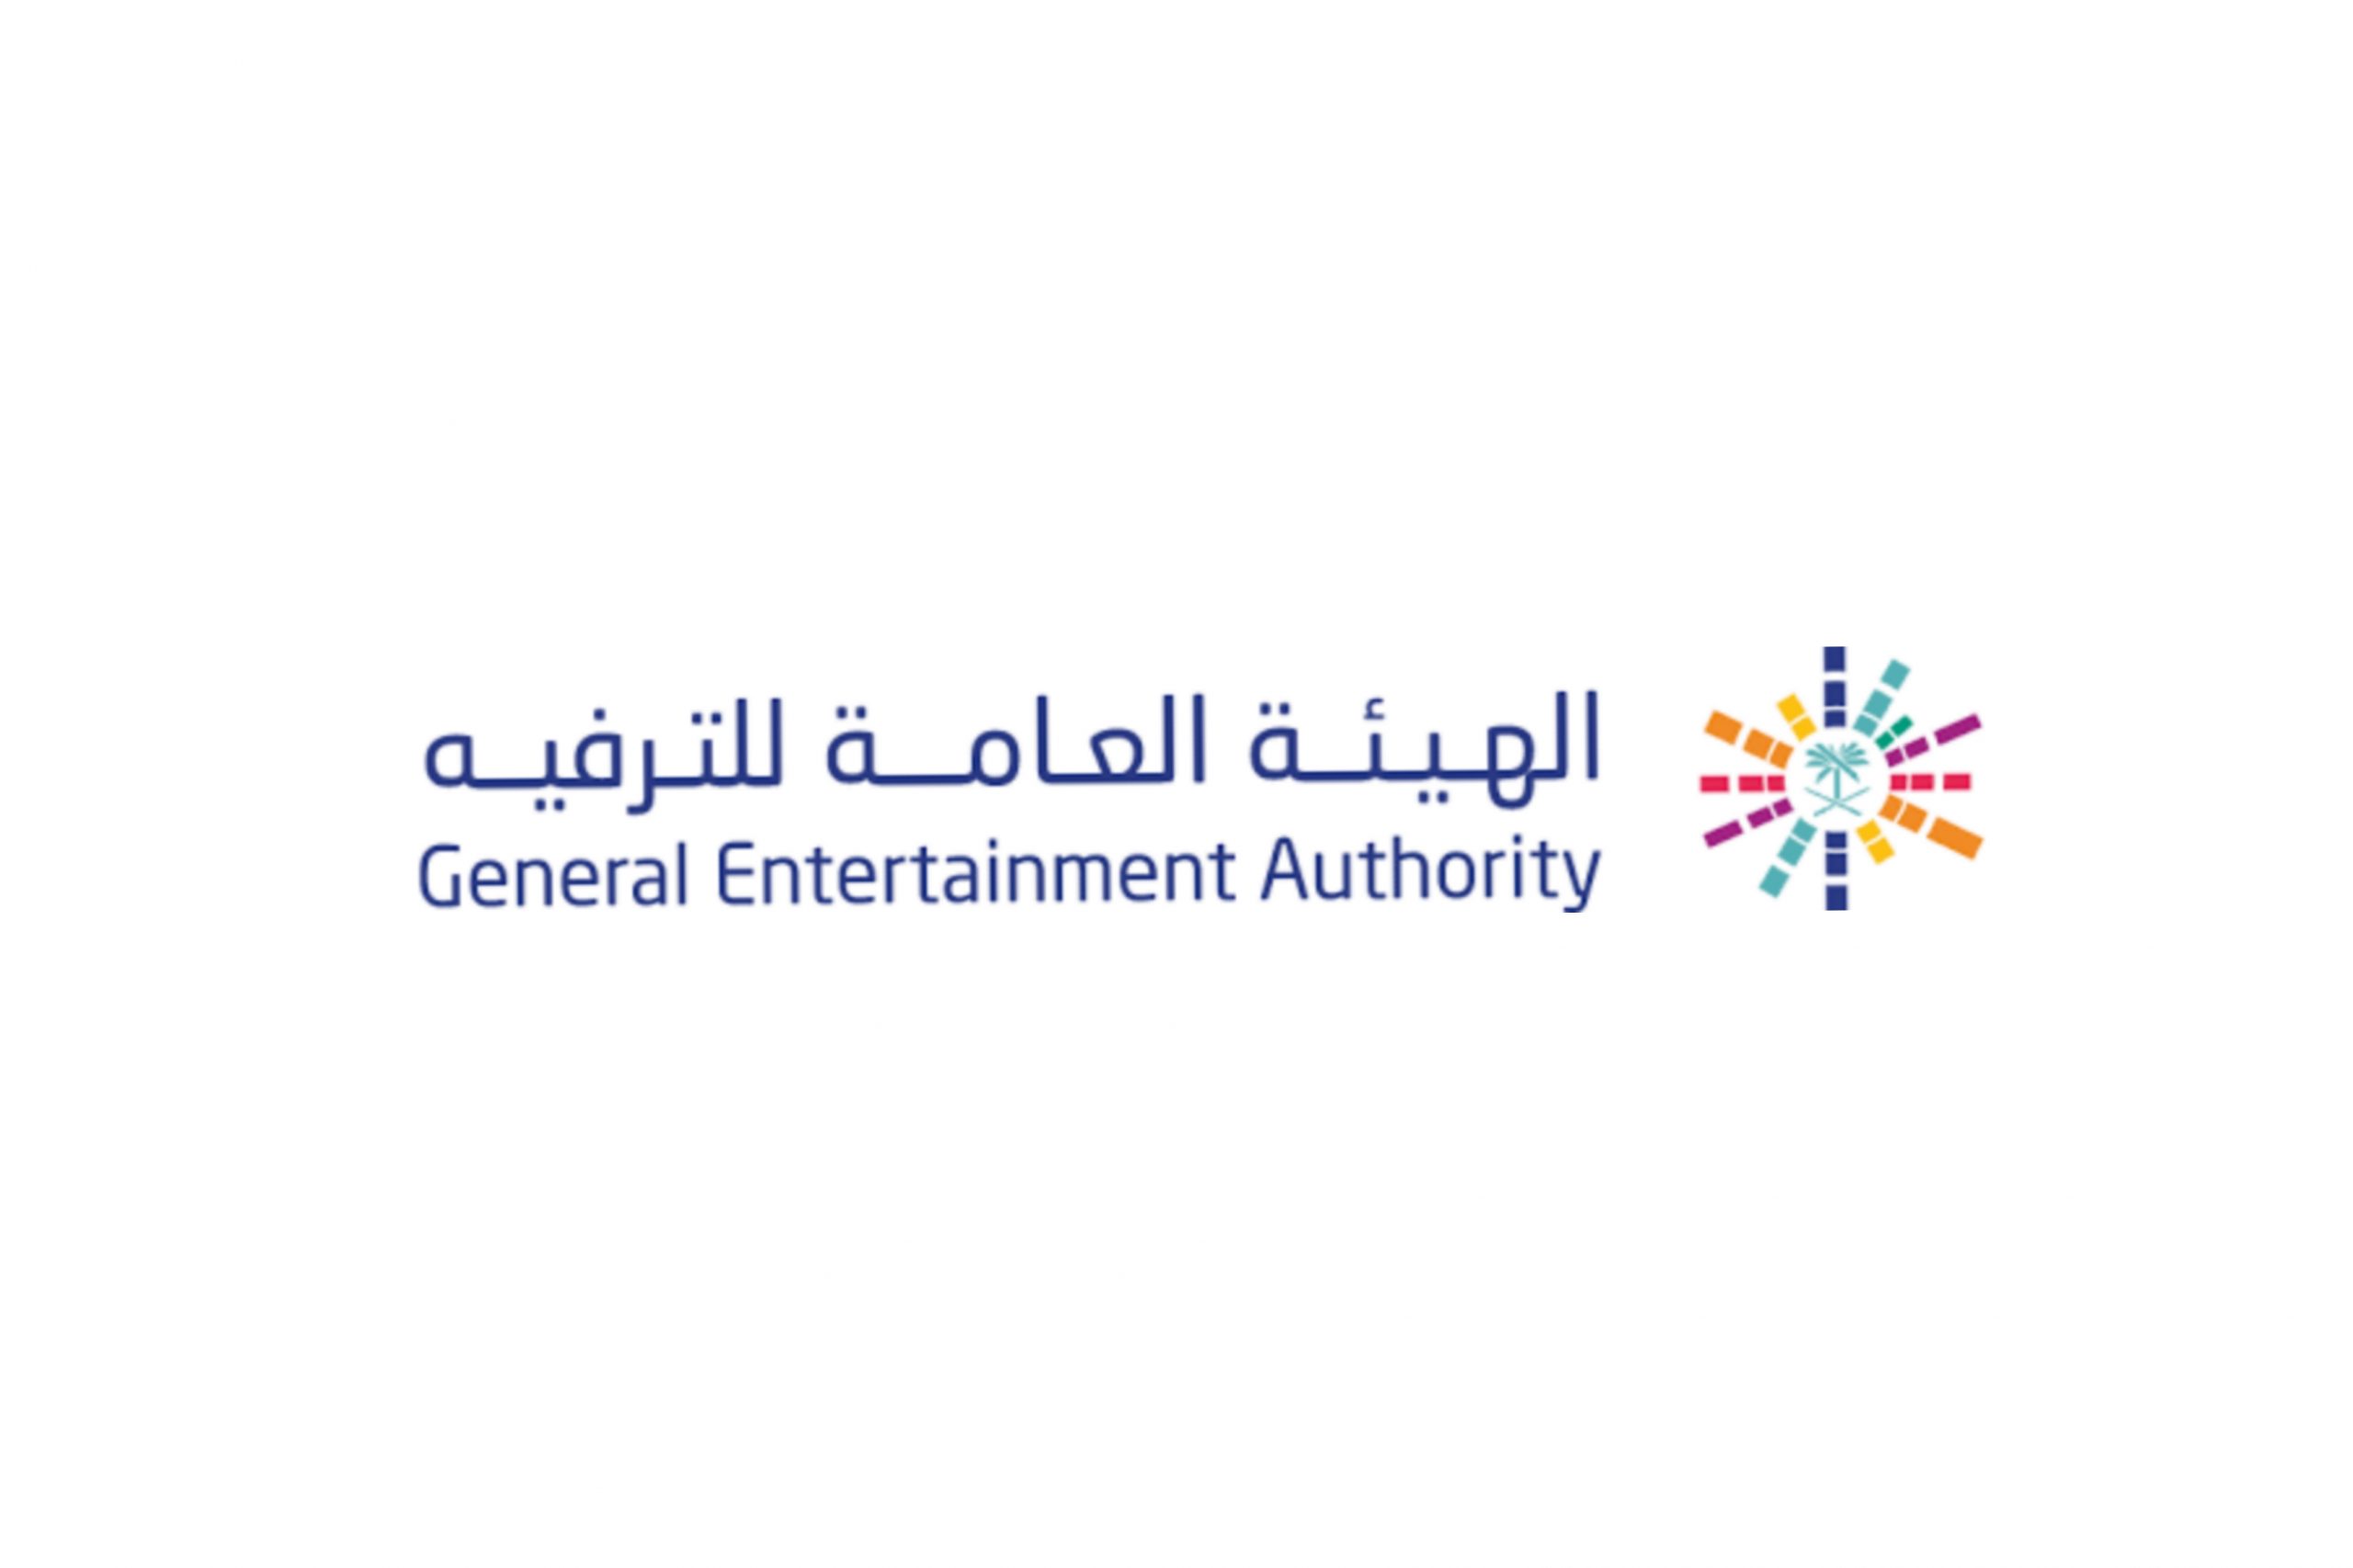  الهيئة العامة للترفيه توفر وظائف إدارية لحملة البكالوريوس بمدينة الرياض